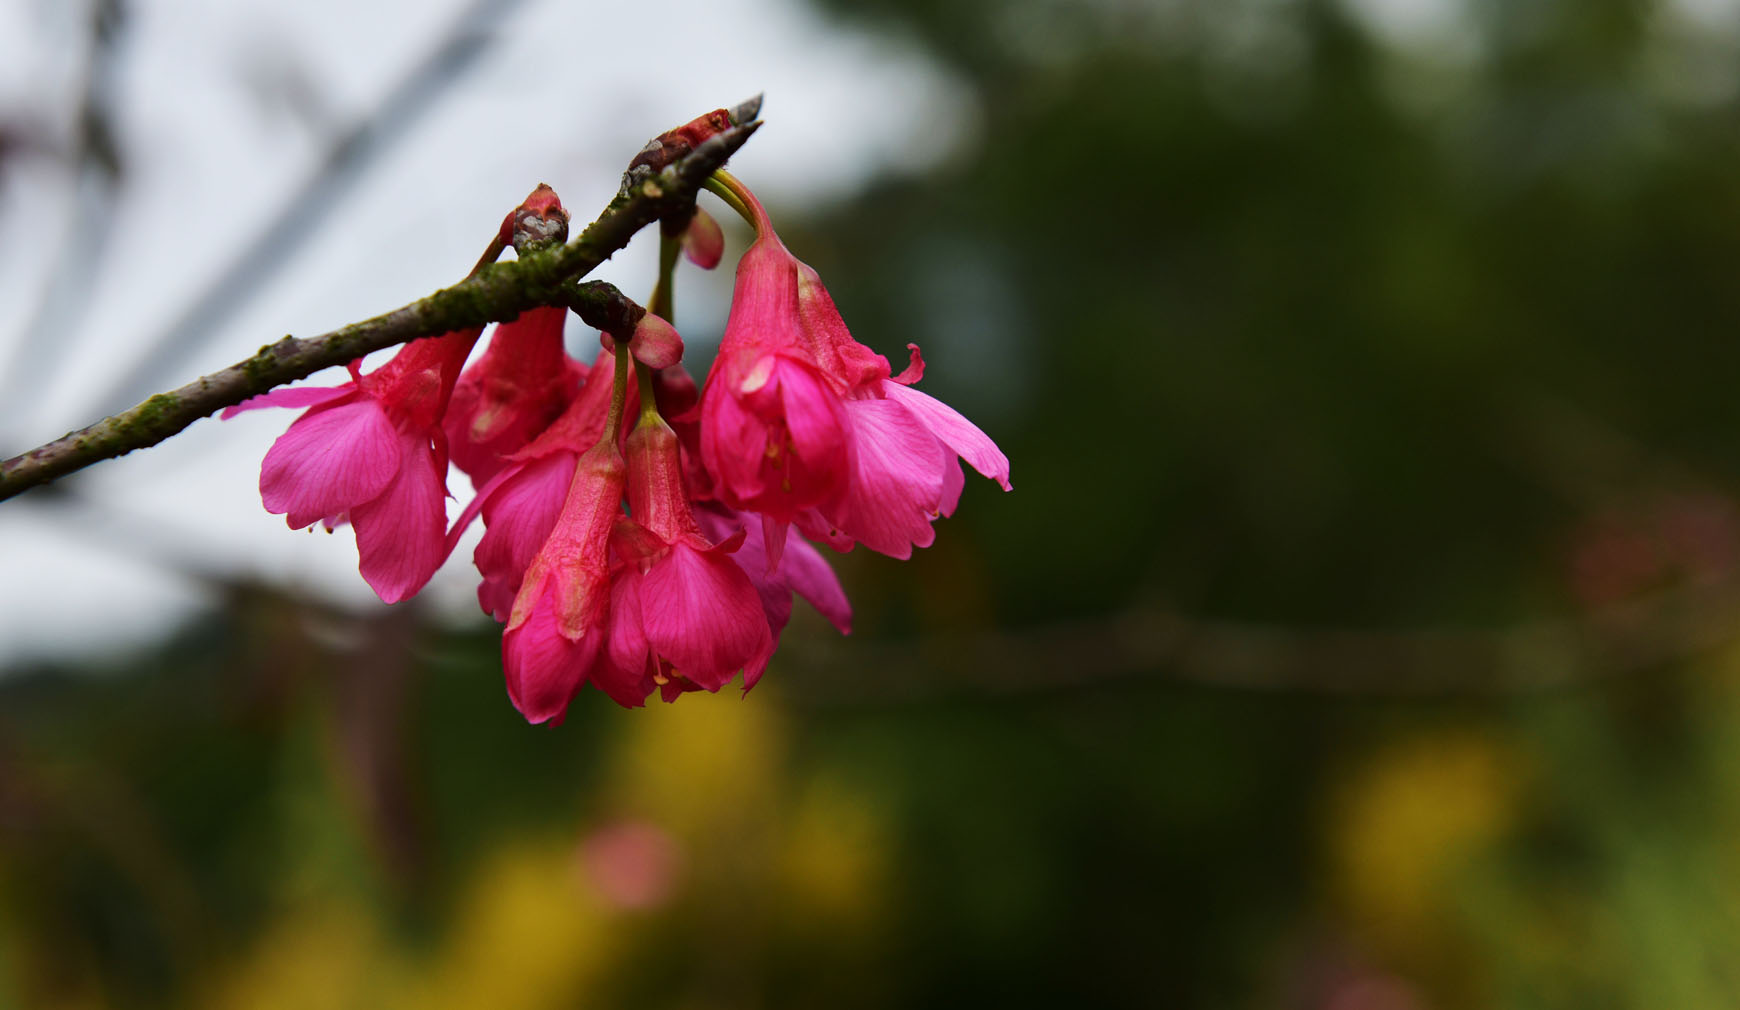 石门国家森林公园樱花图片